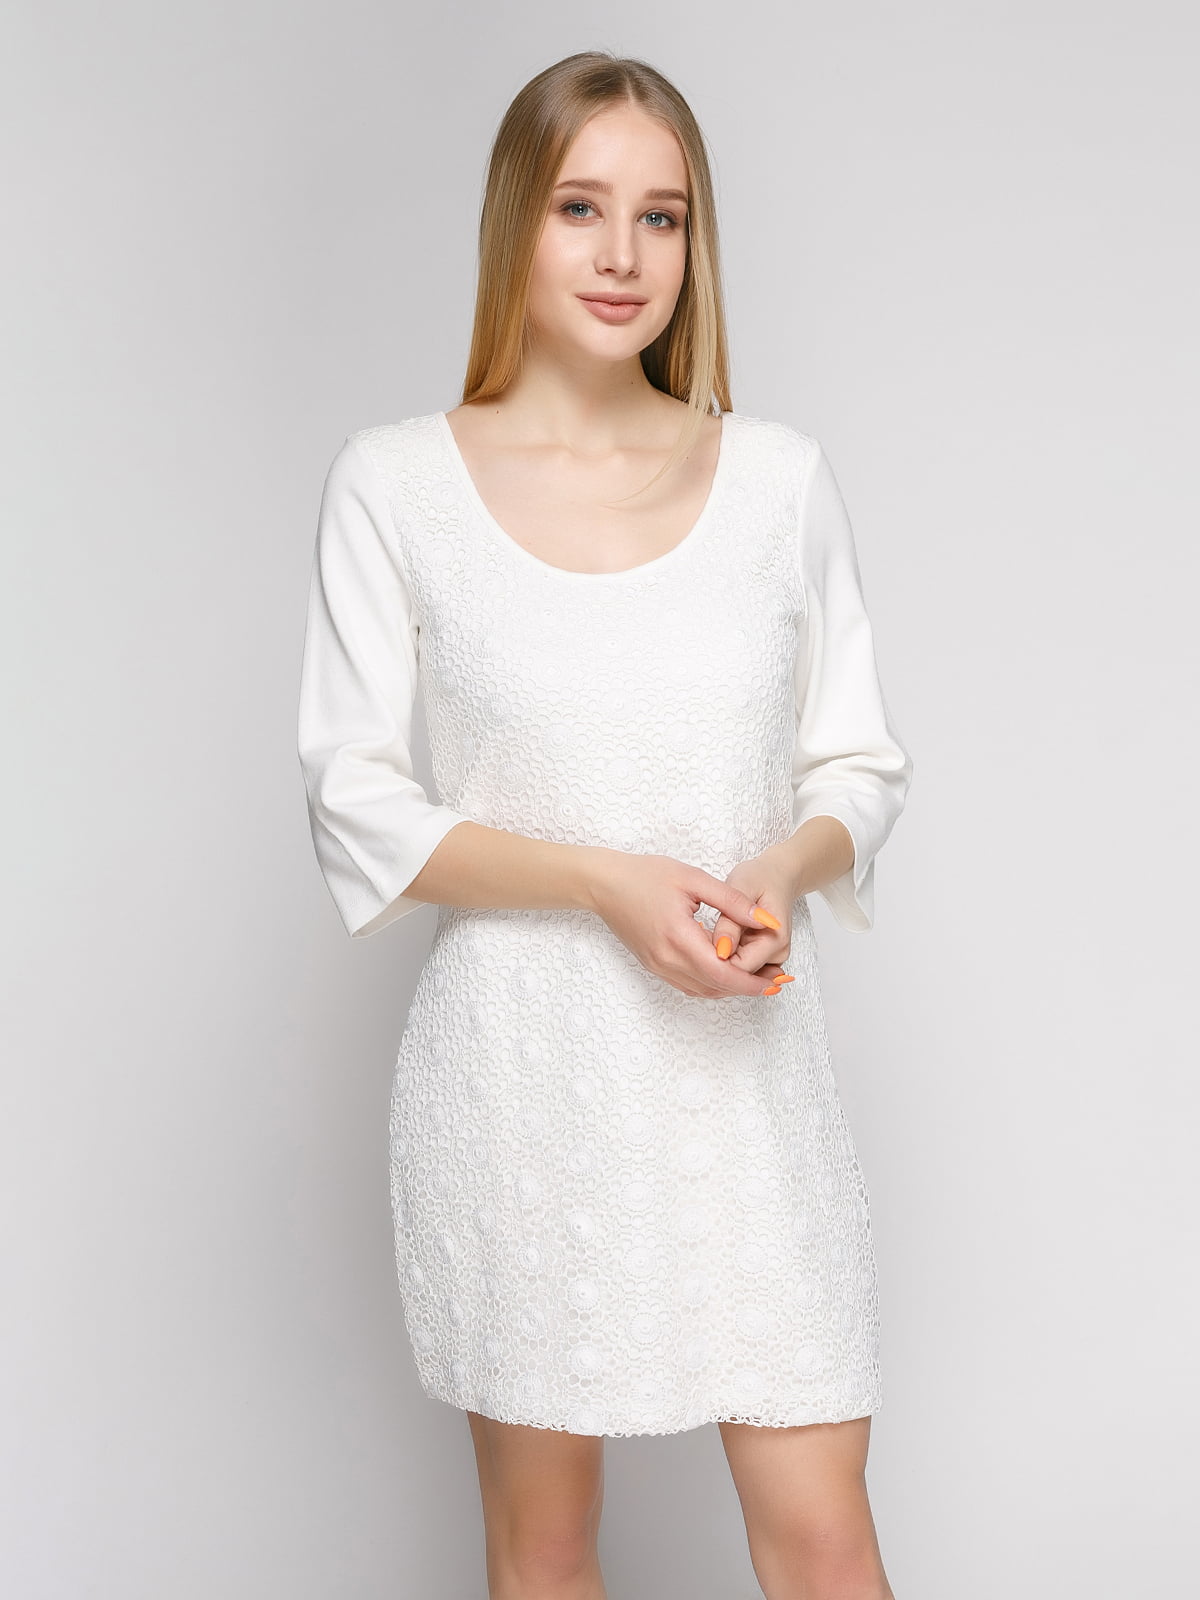 Платье белое ажурное | 402776